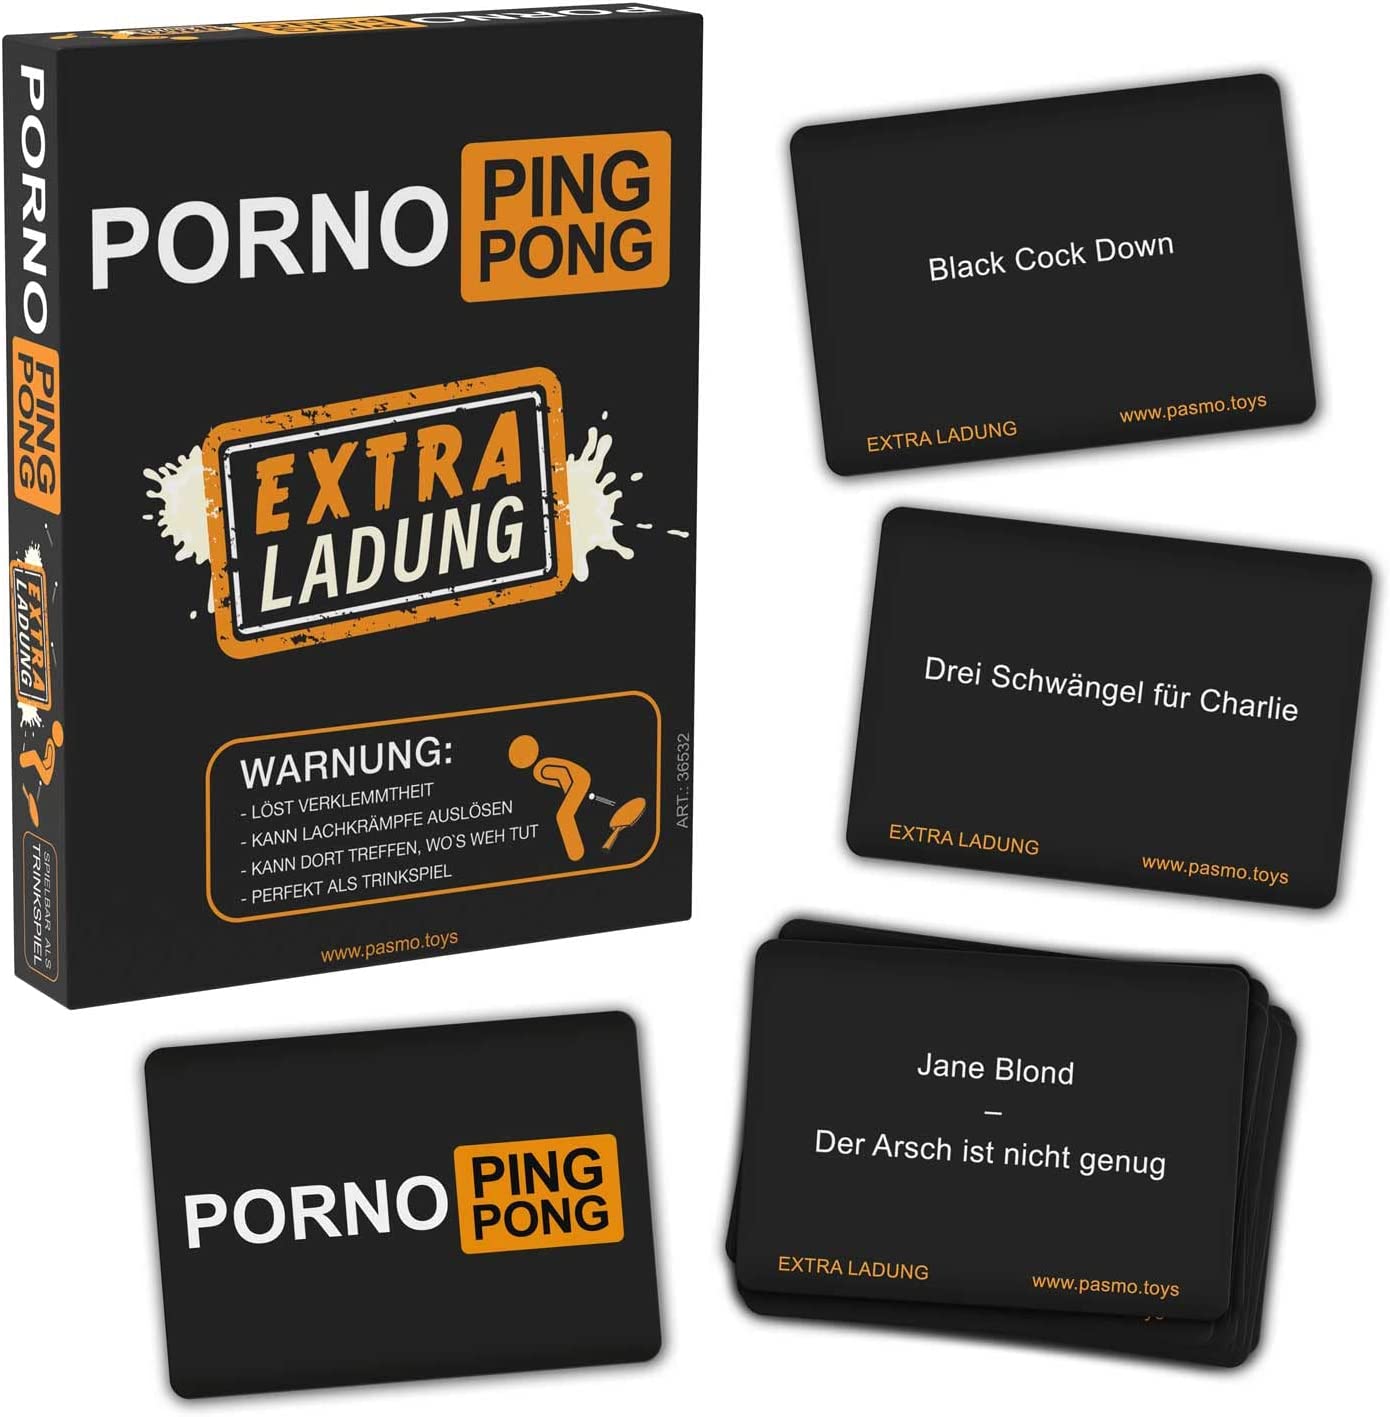 Porno Ping Pong